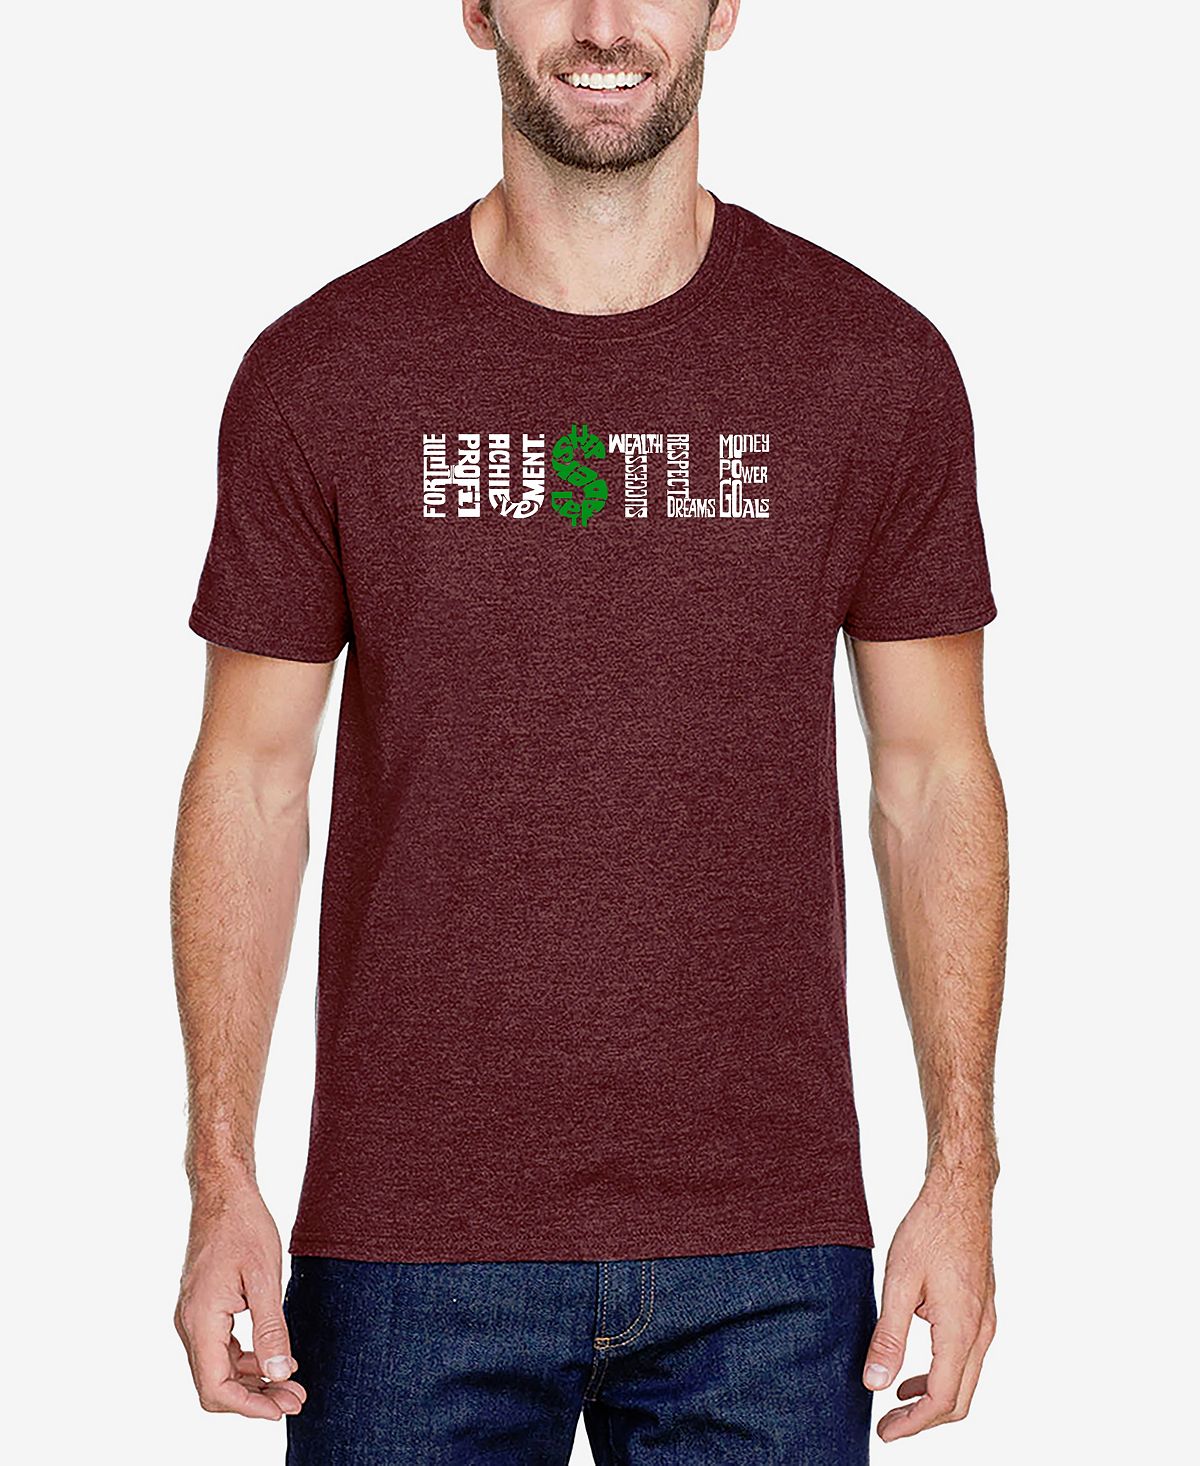 Мужская футболка premium blend word art hustle LA Pop Art